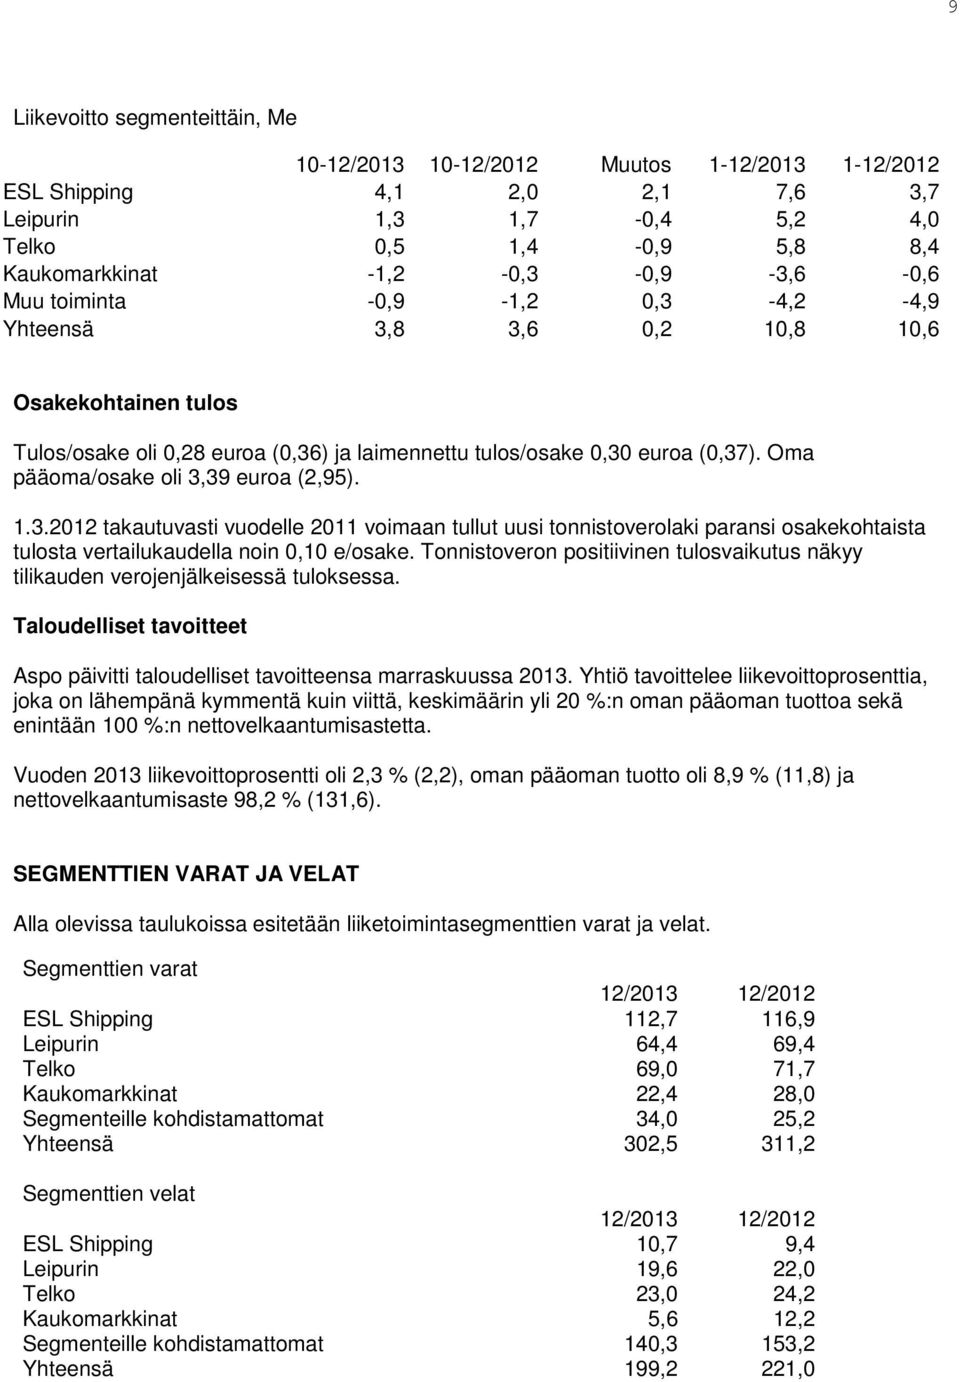 Oma pääoma/osake oli 3,39 euroa (2,95). 1.3.2012 takautuvasti vuodelle 2011 voimaan tullut uusi tonnistoverolaki paransi osakekohtaista tulosta vertailukaudella noin 0,10 e/osake.